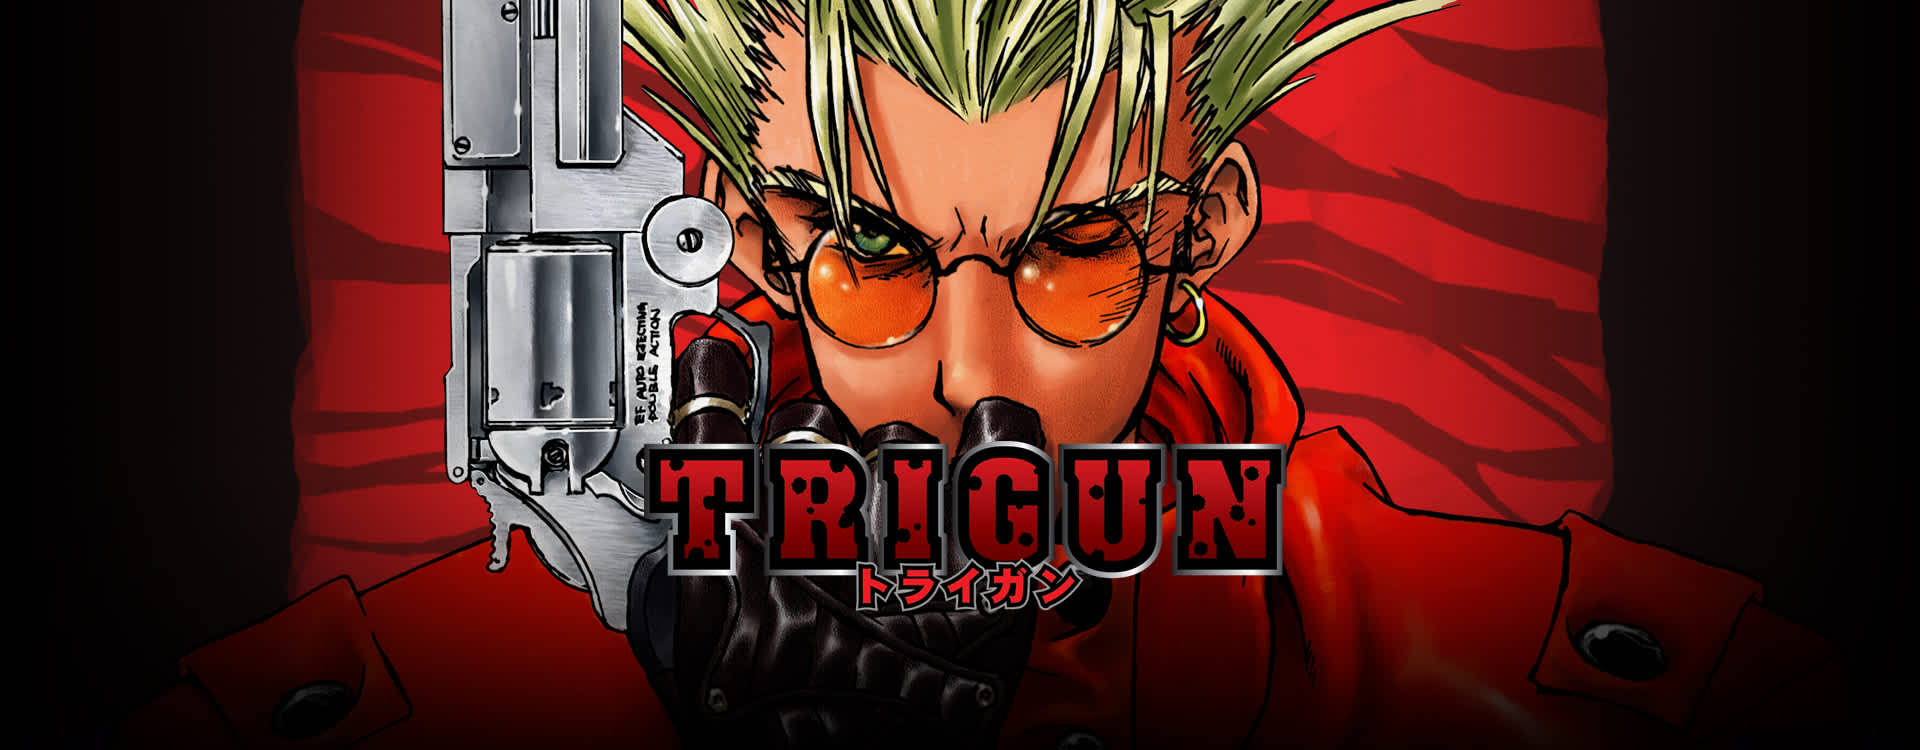  trigun cyberpunk anime